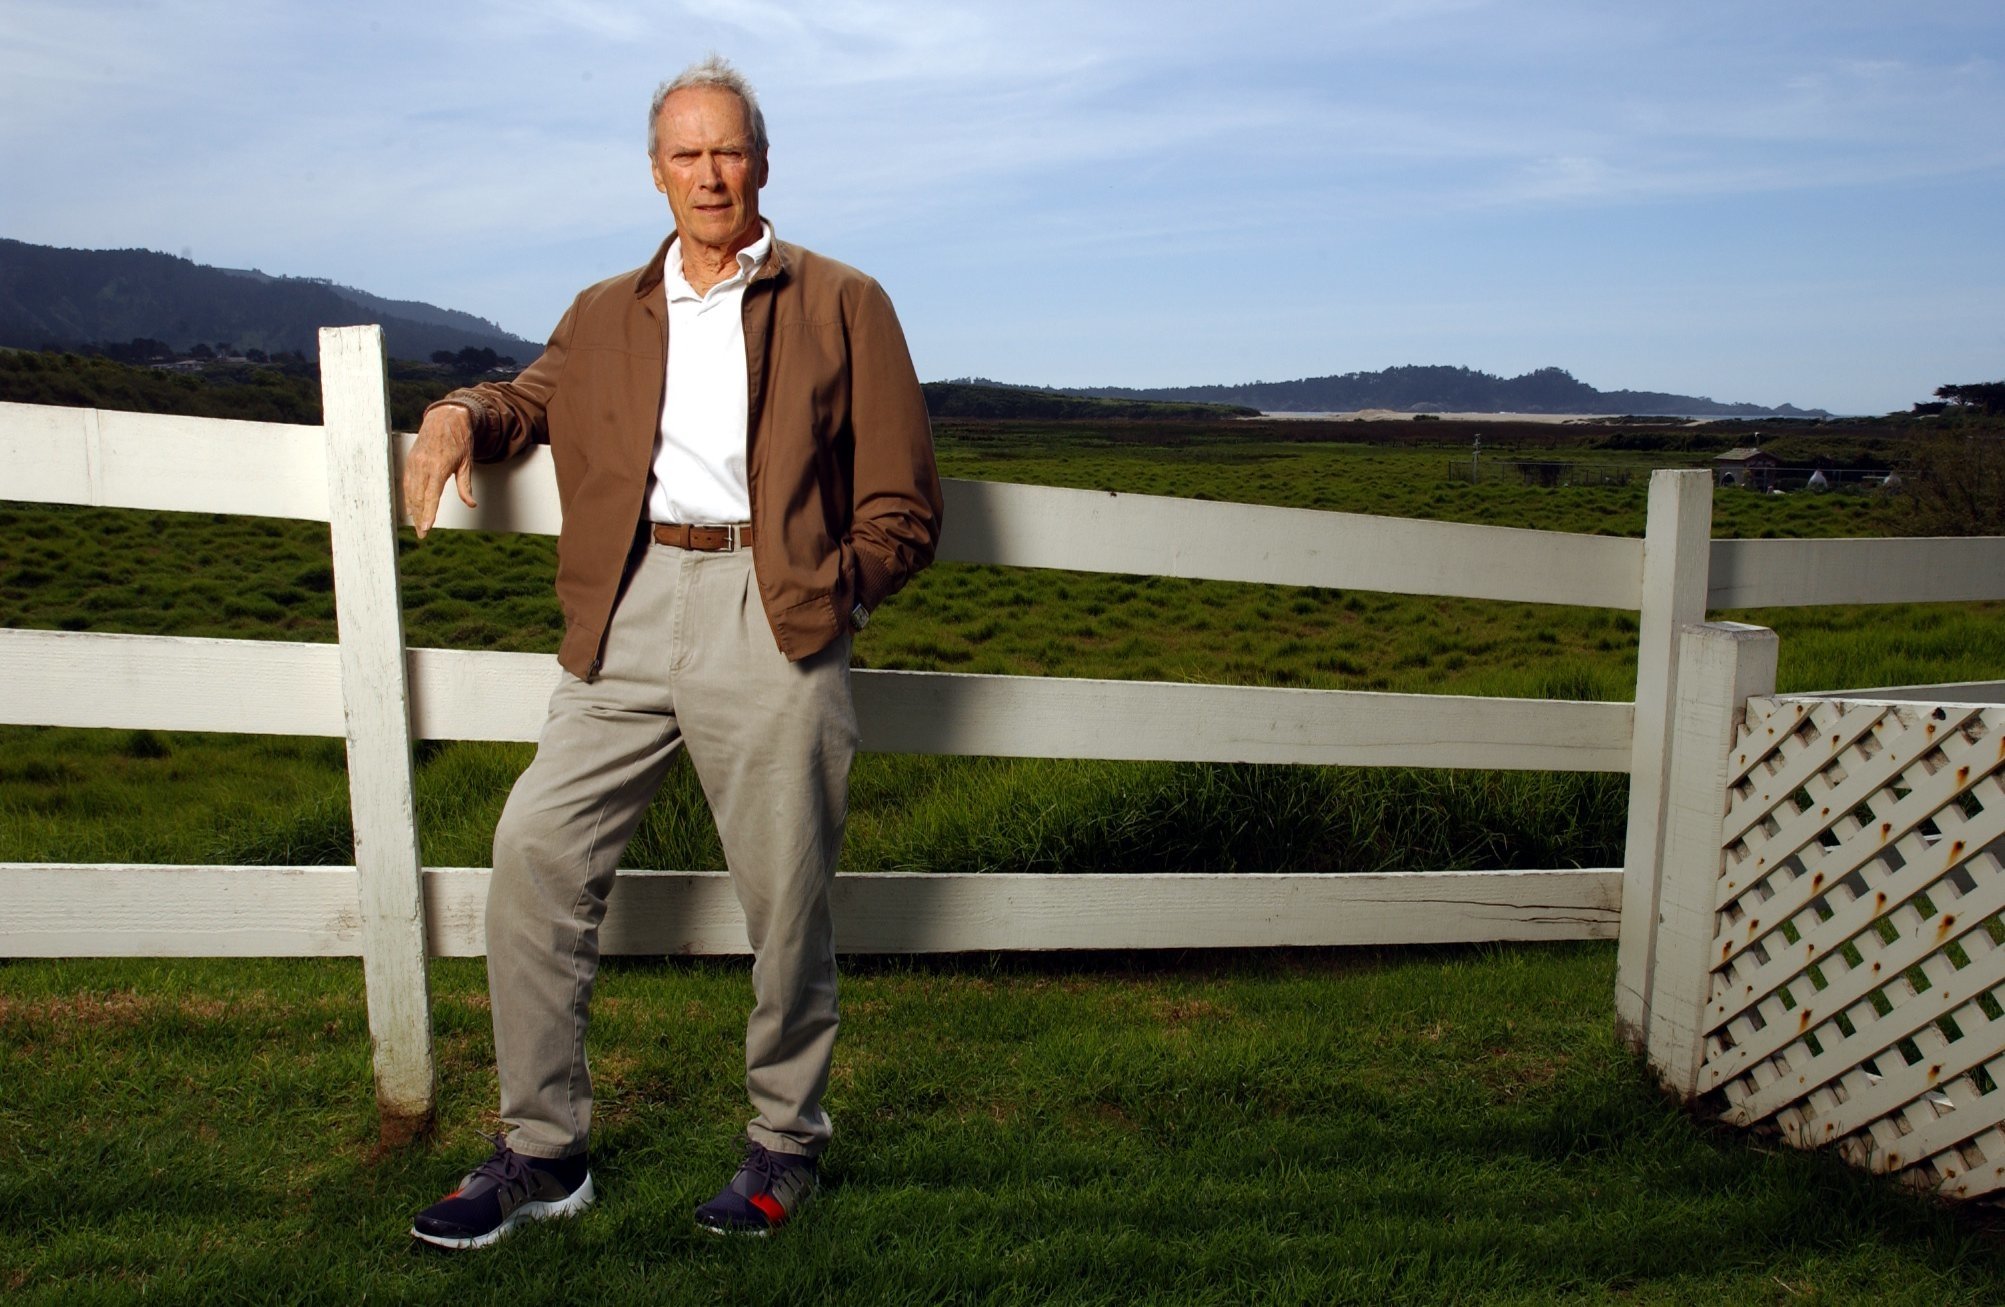 Der Filmproduzent Clint Eastwood wurde am 1. März 2005 in seinem Mission Ranch Inn Carmel in San Jose, Kalifornien fotografiert ┃Quelle: Getty Images